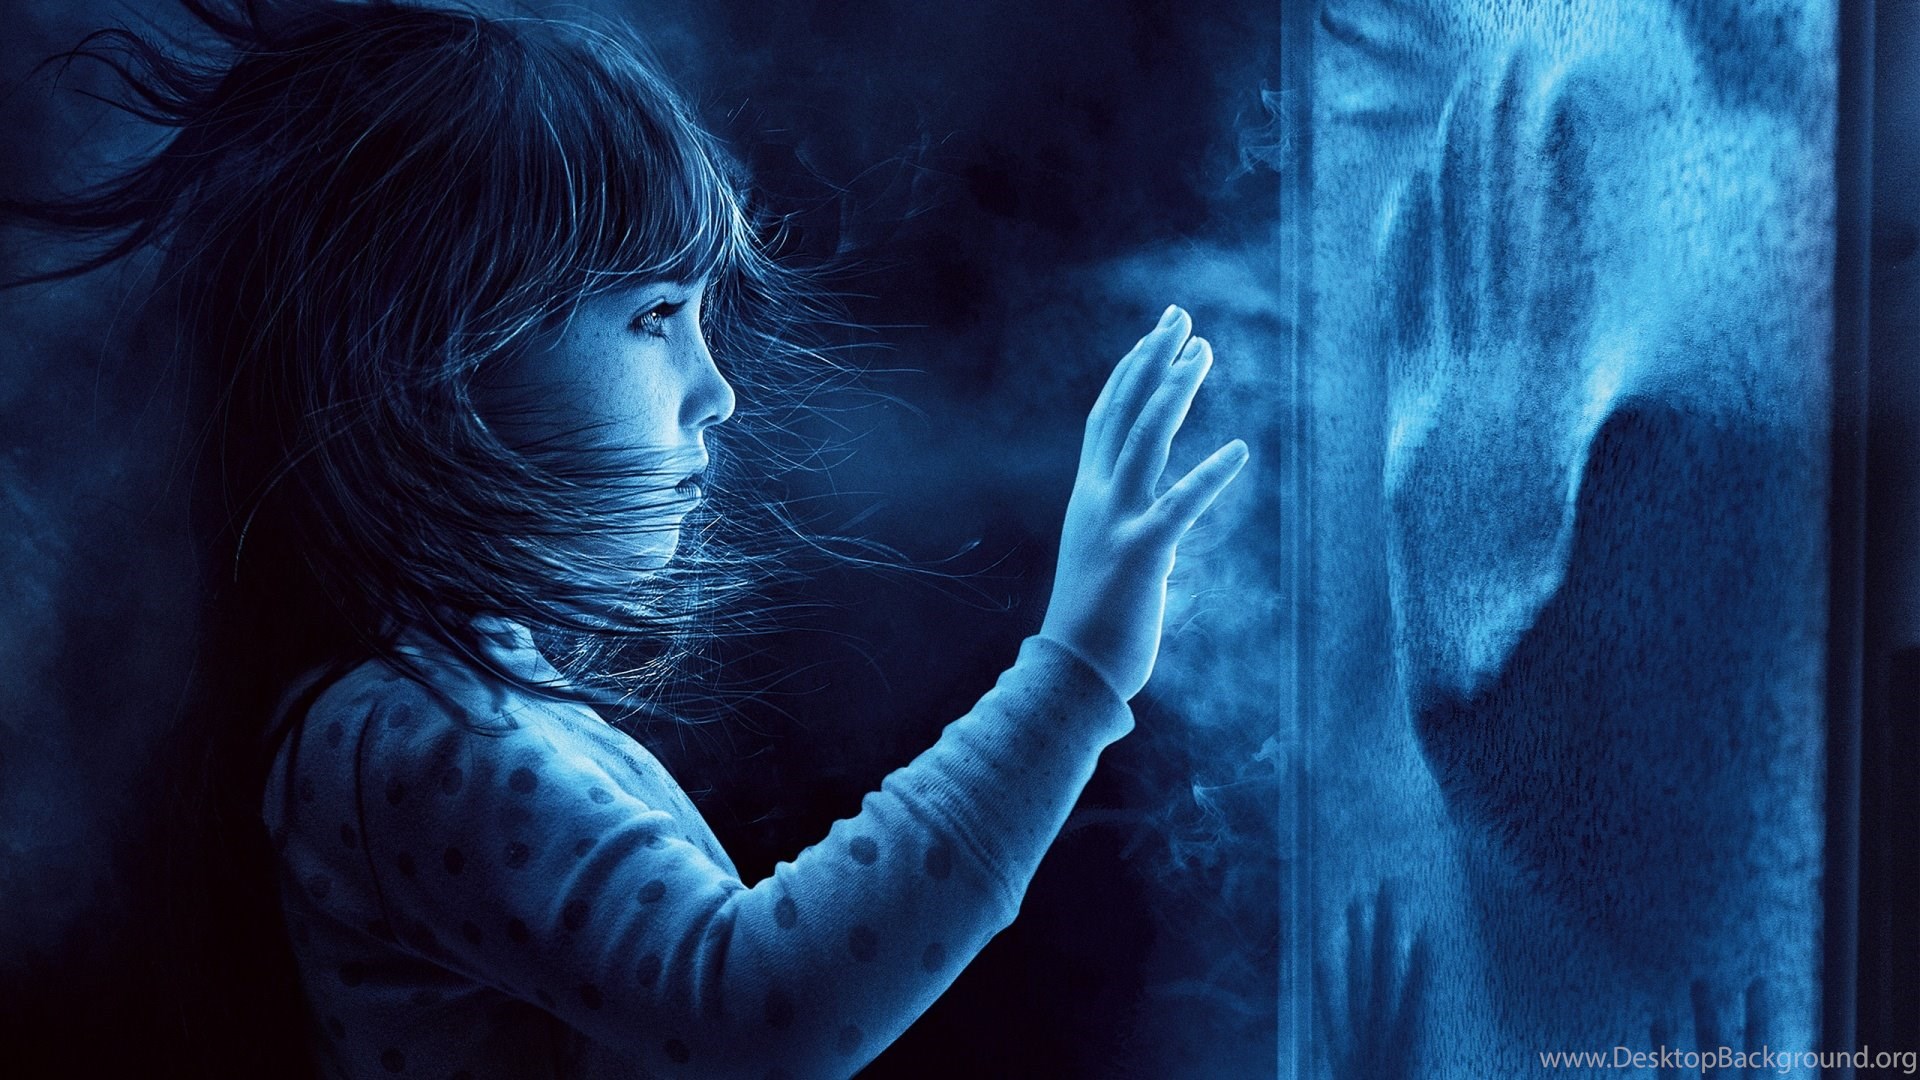 Poltergeist 2015 Horror Movie Wallpaper DreamLoveWallpaper Desktop Background